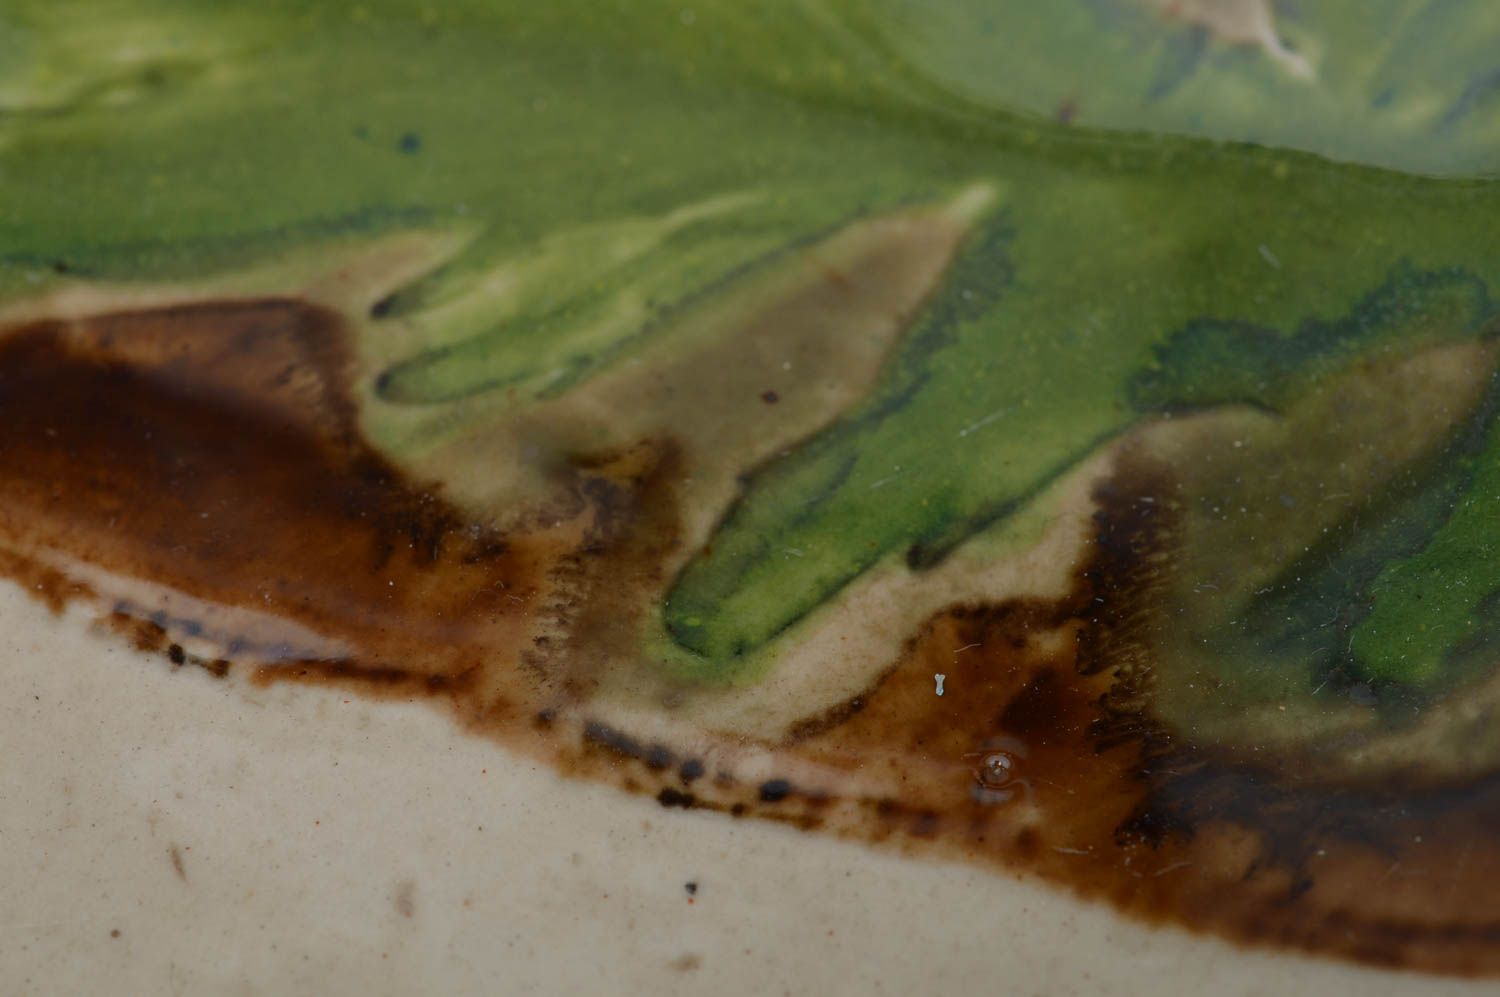 Оригинальная миска для салата из фарфора ручной работы красивая расписная фото 3